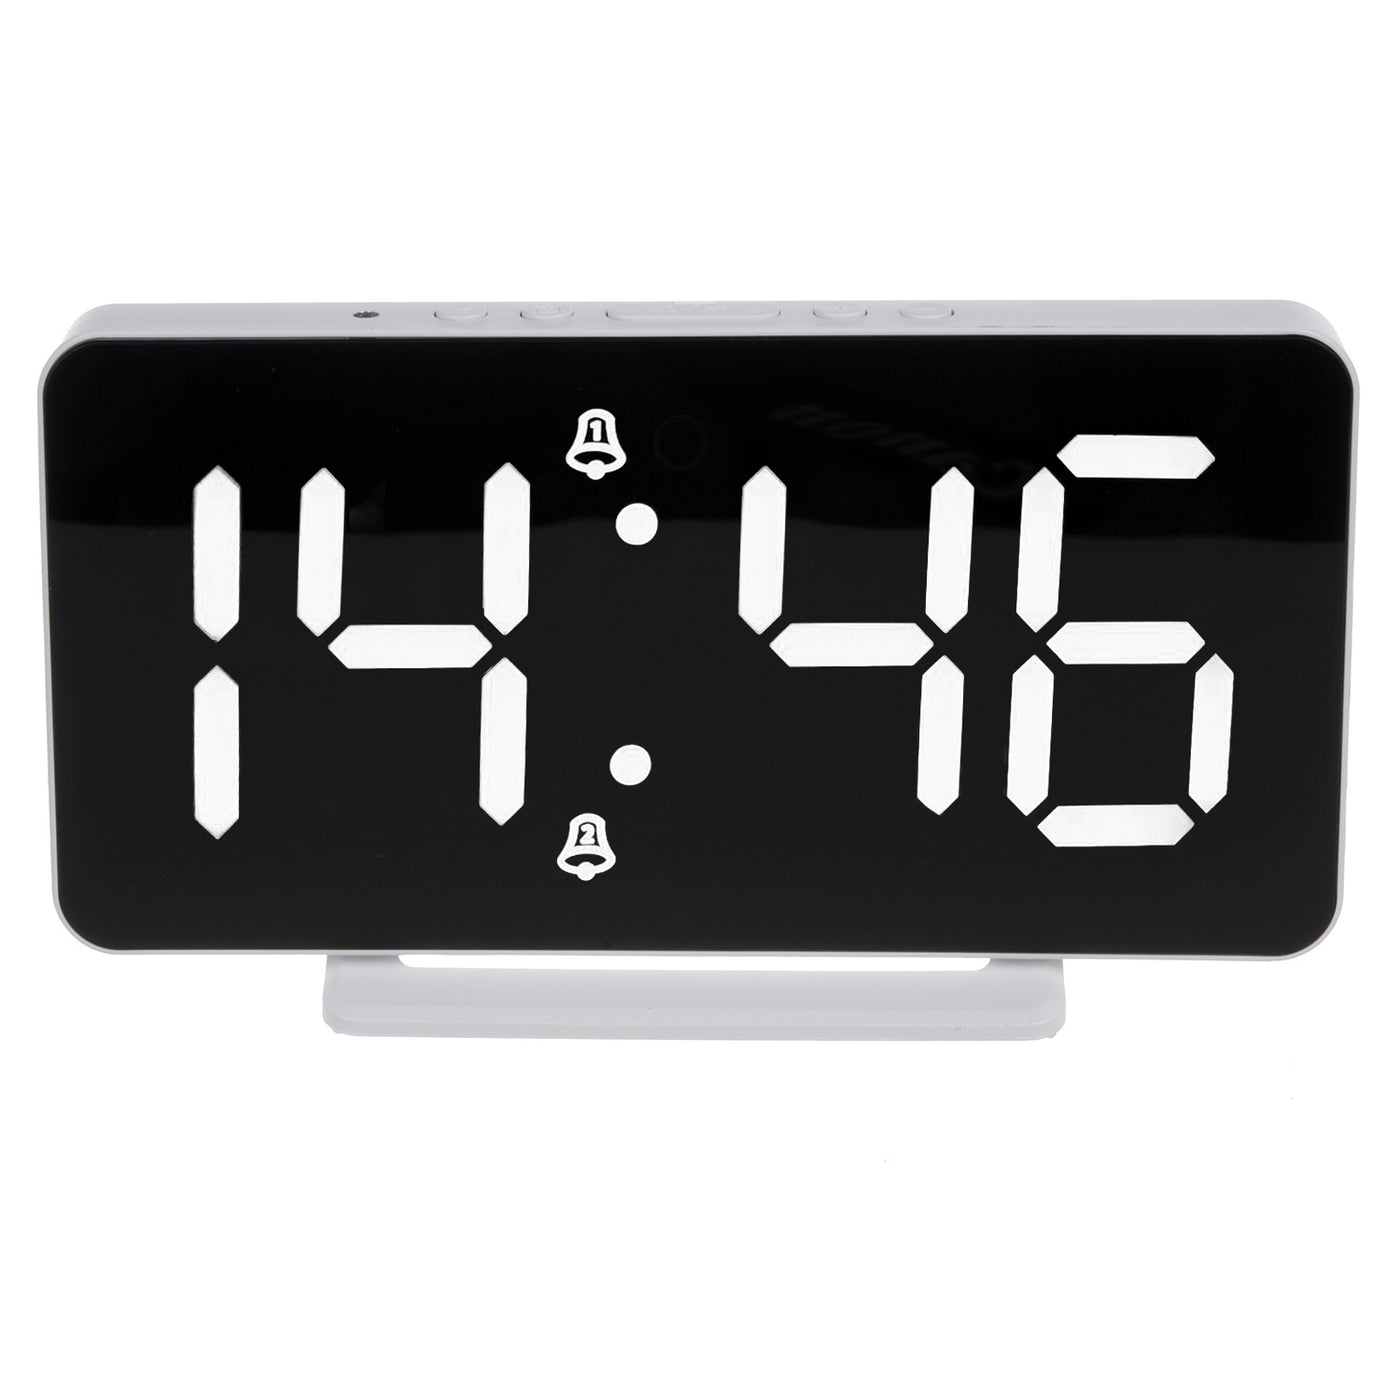 Zegar z alarmem i funkcją termometru, GreenBlue, biały, GB383